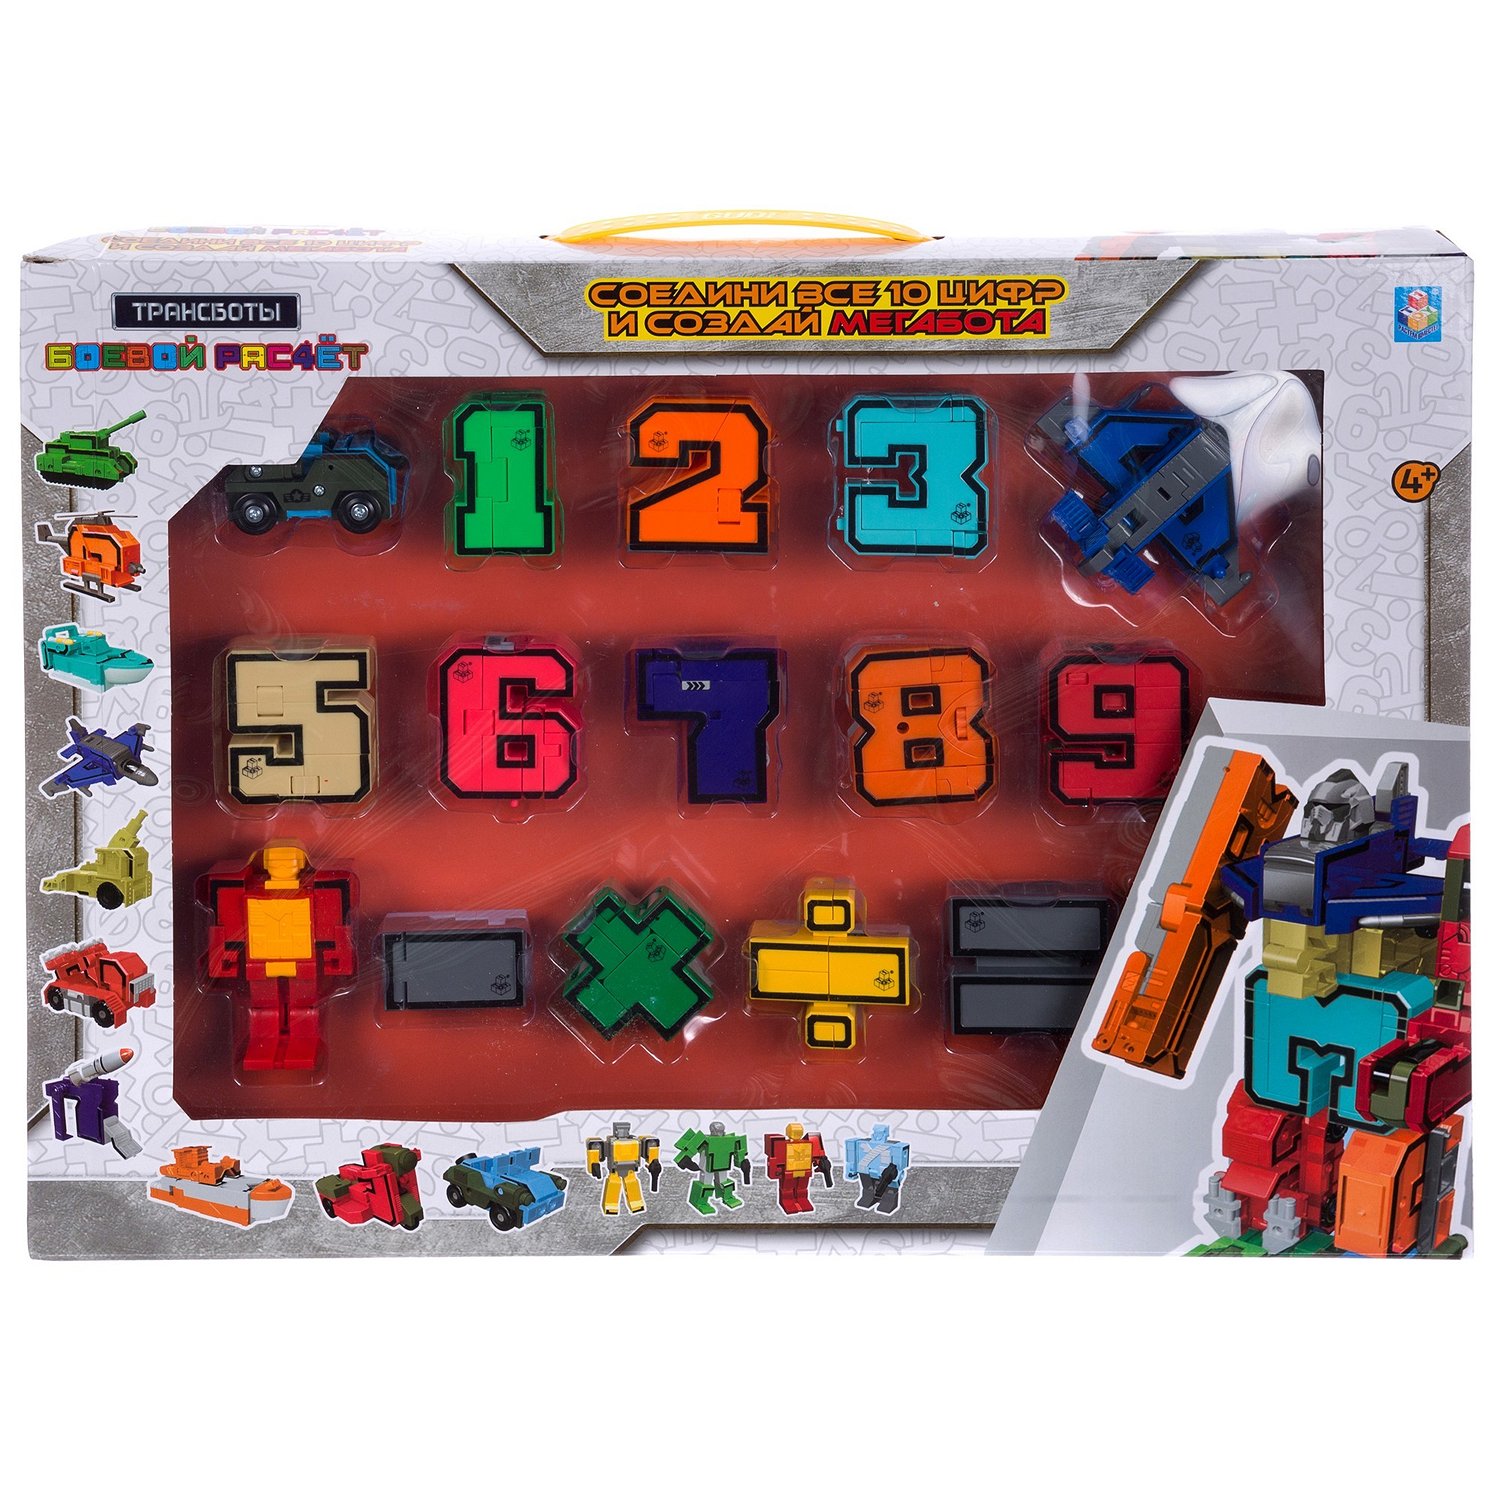 Игровой набор из серии Трансботы - Боевой расчет, 10 цифр и 5 знаков  